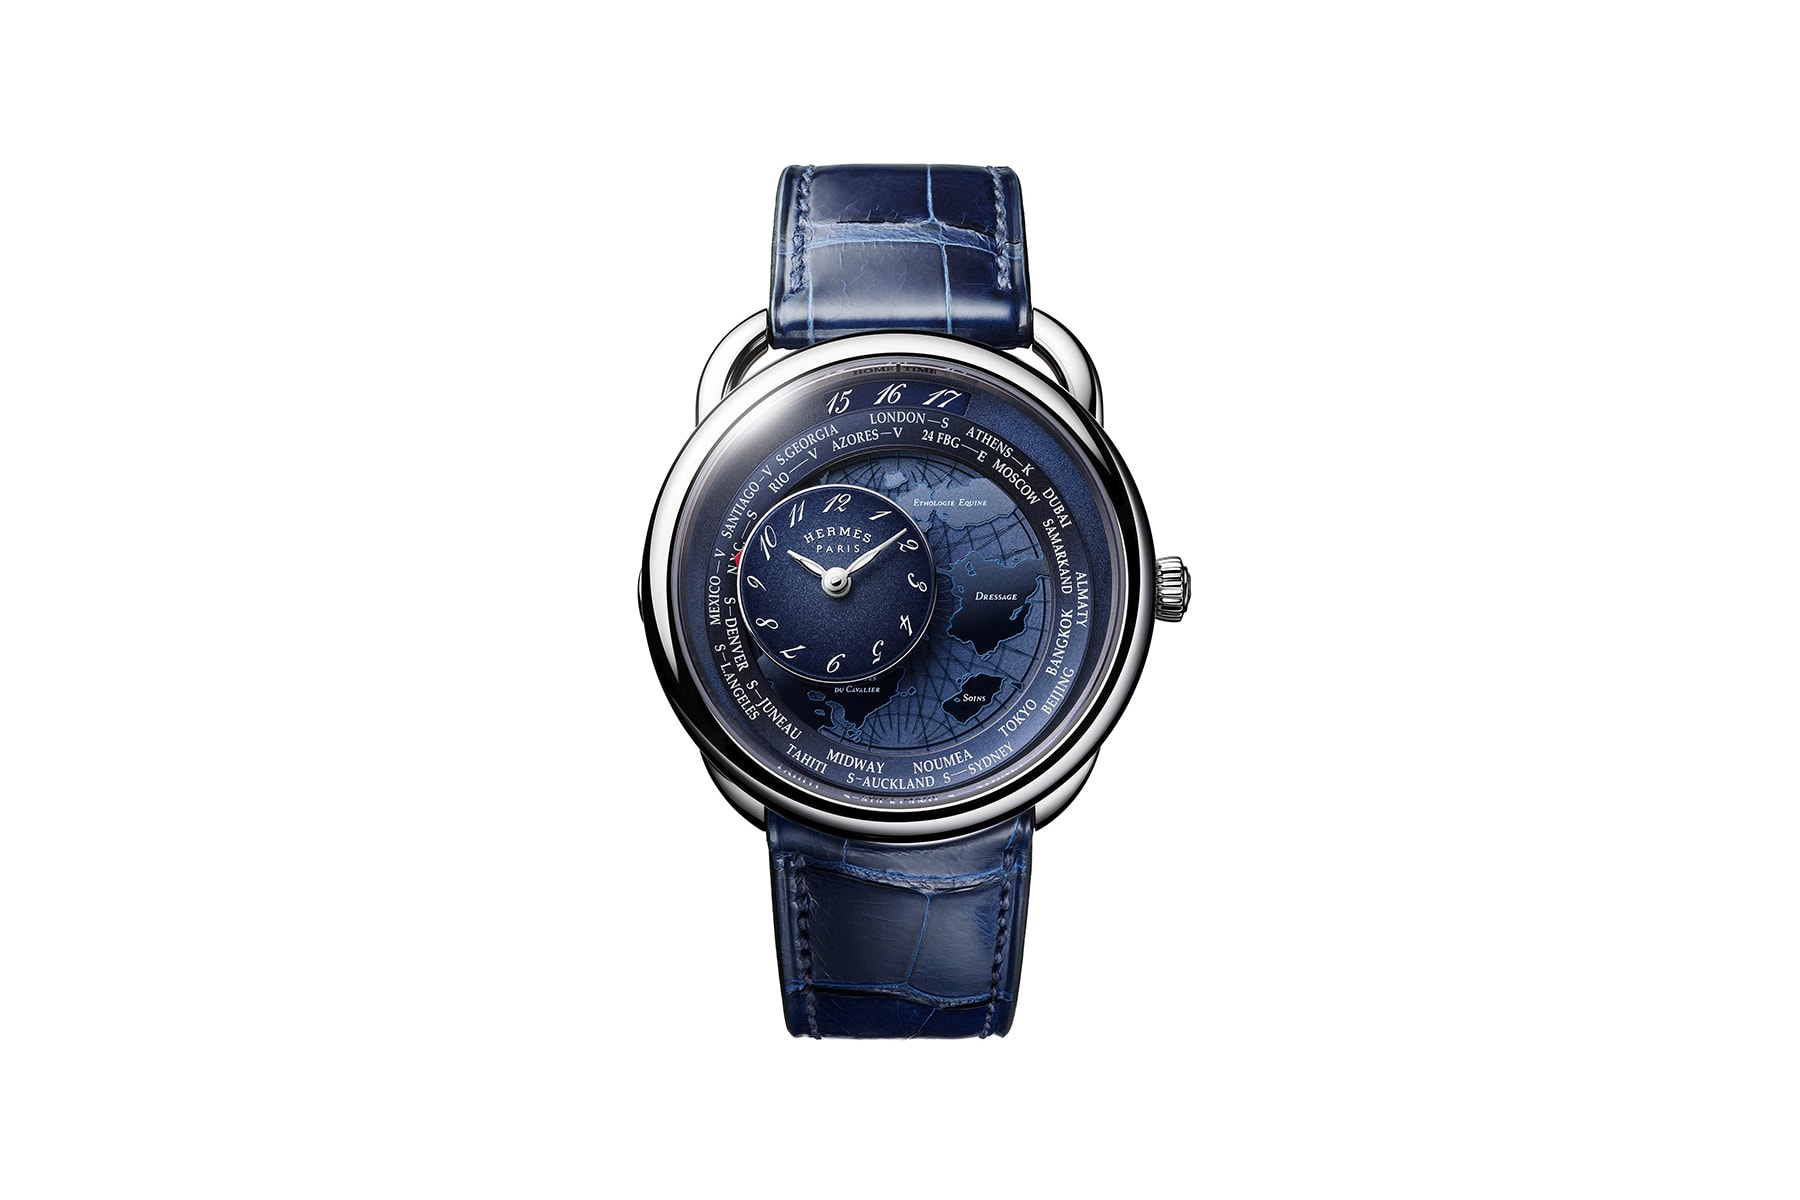 Hermès 全新 Arceau Le Temps Voyageur 錶款正式發售